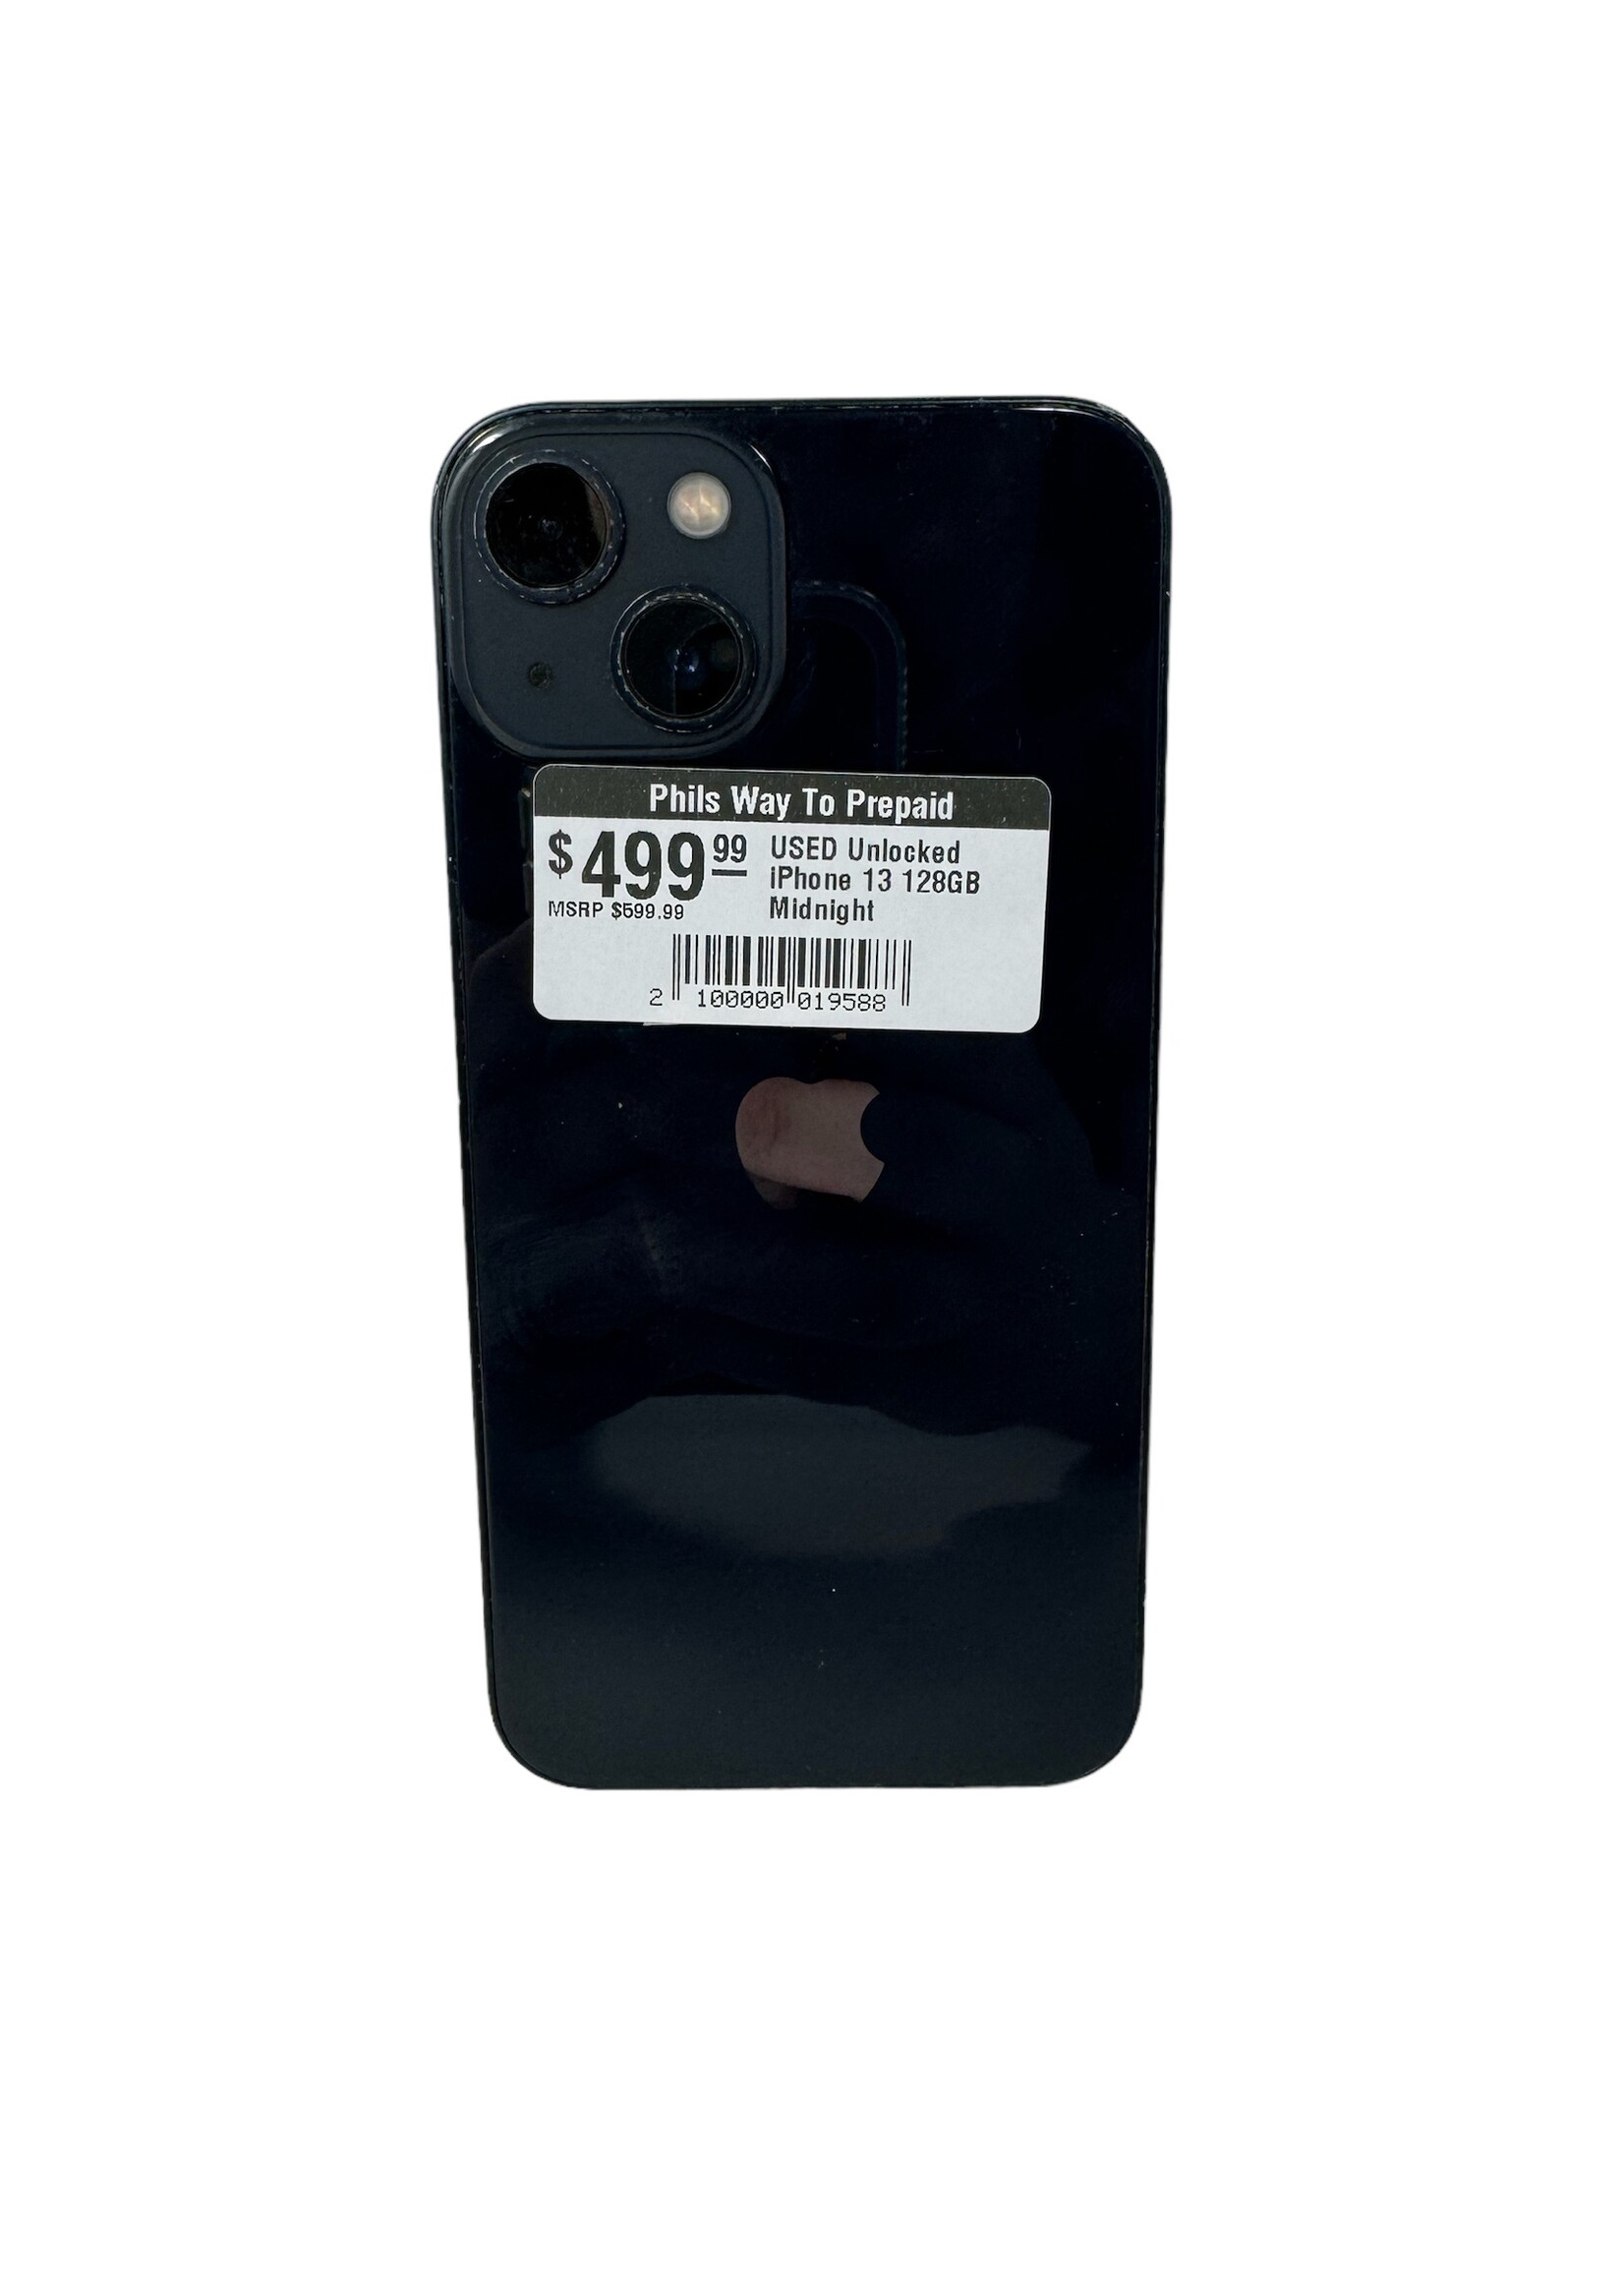 Apple USED Unlocked iPhone 13 128GB Midnight